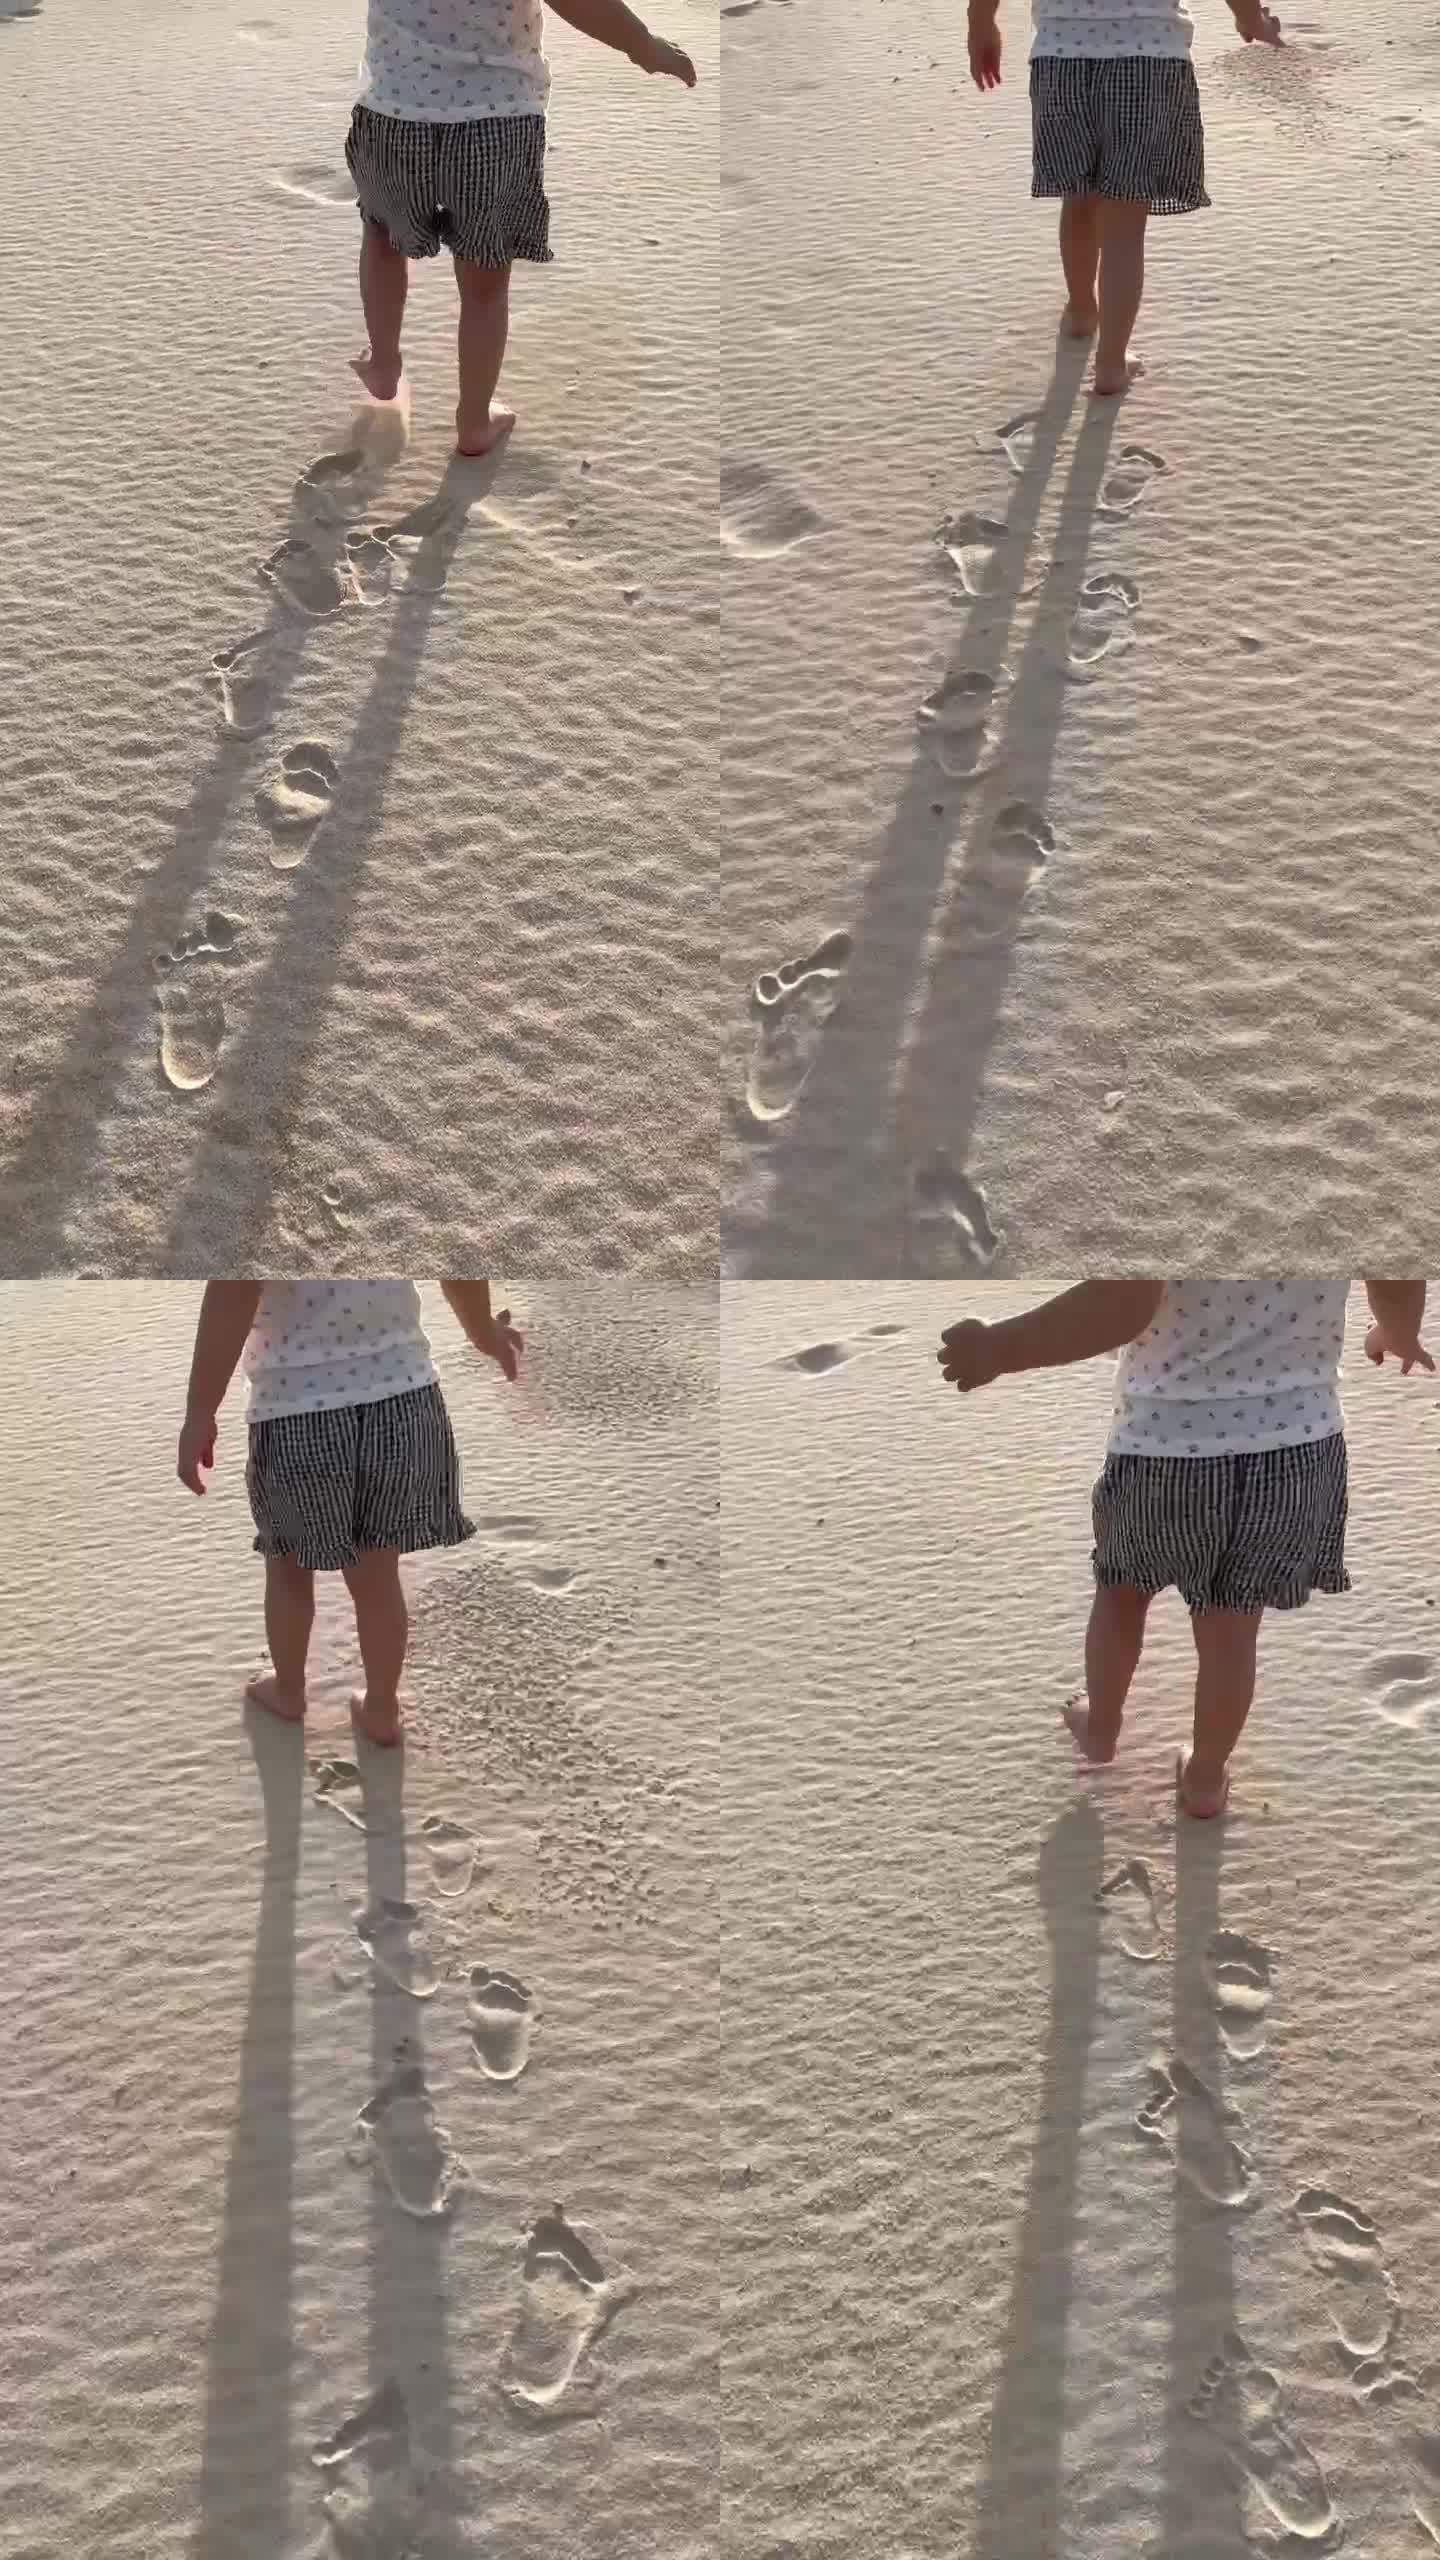 沙滩上一个赤脚的可爱小孩一步一个脚印走着